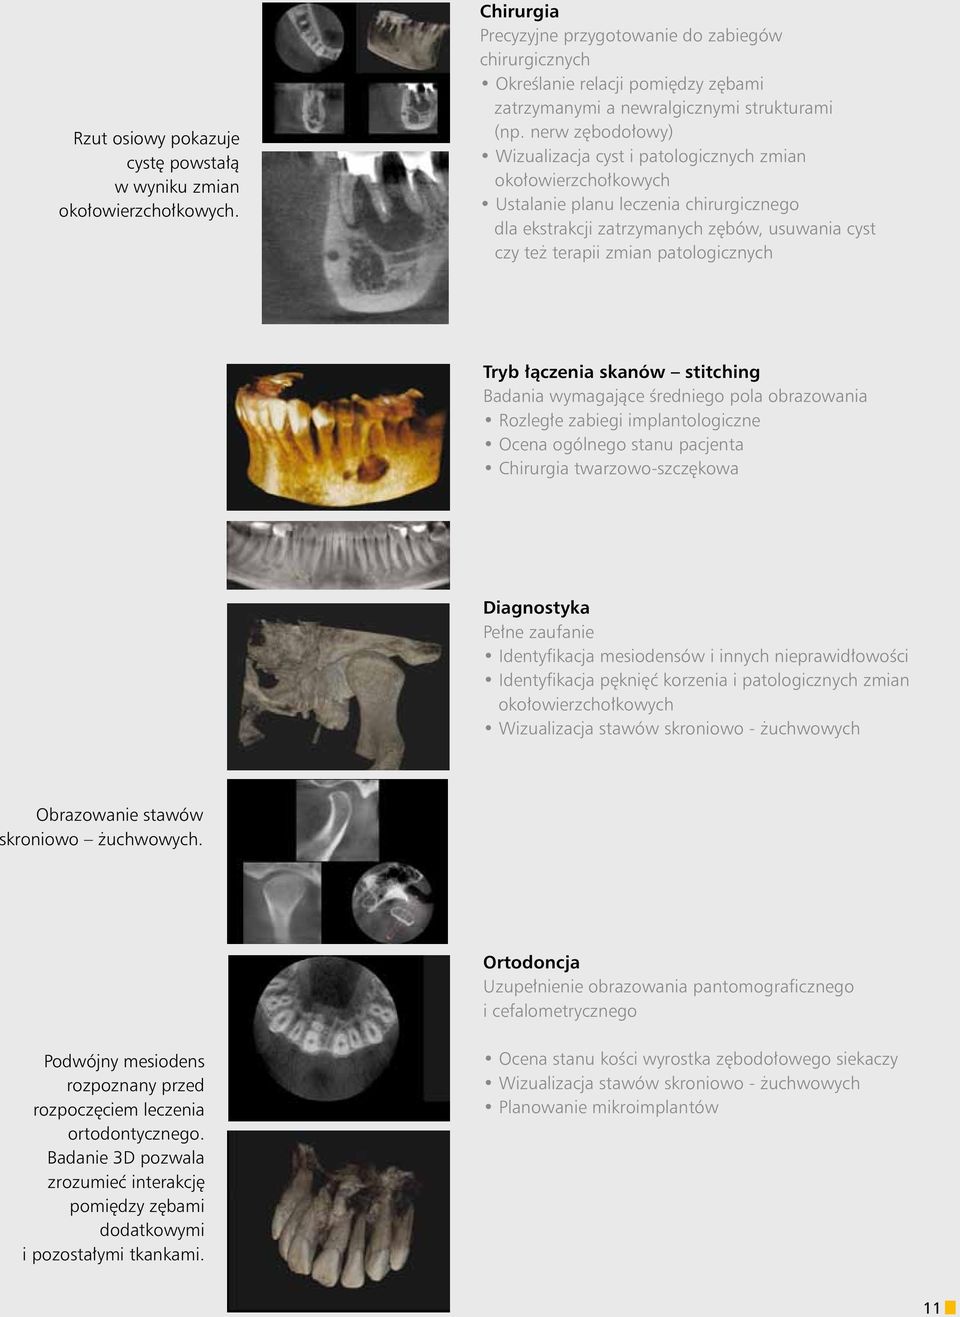 nerw zębodołowy) Wizualizacja cyst i patologicznych zmian okołowierzchołkowych Ustalanie planu leczenia chirurgicznego dla ekstrakcji zatrzymanych zębów, usuwania cyst czy też terapii zmian